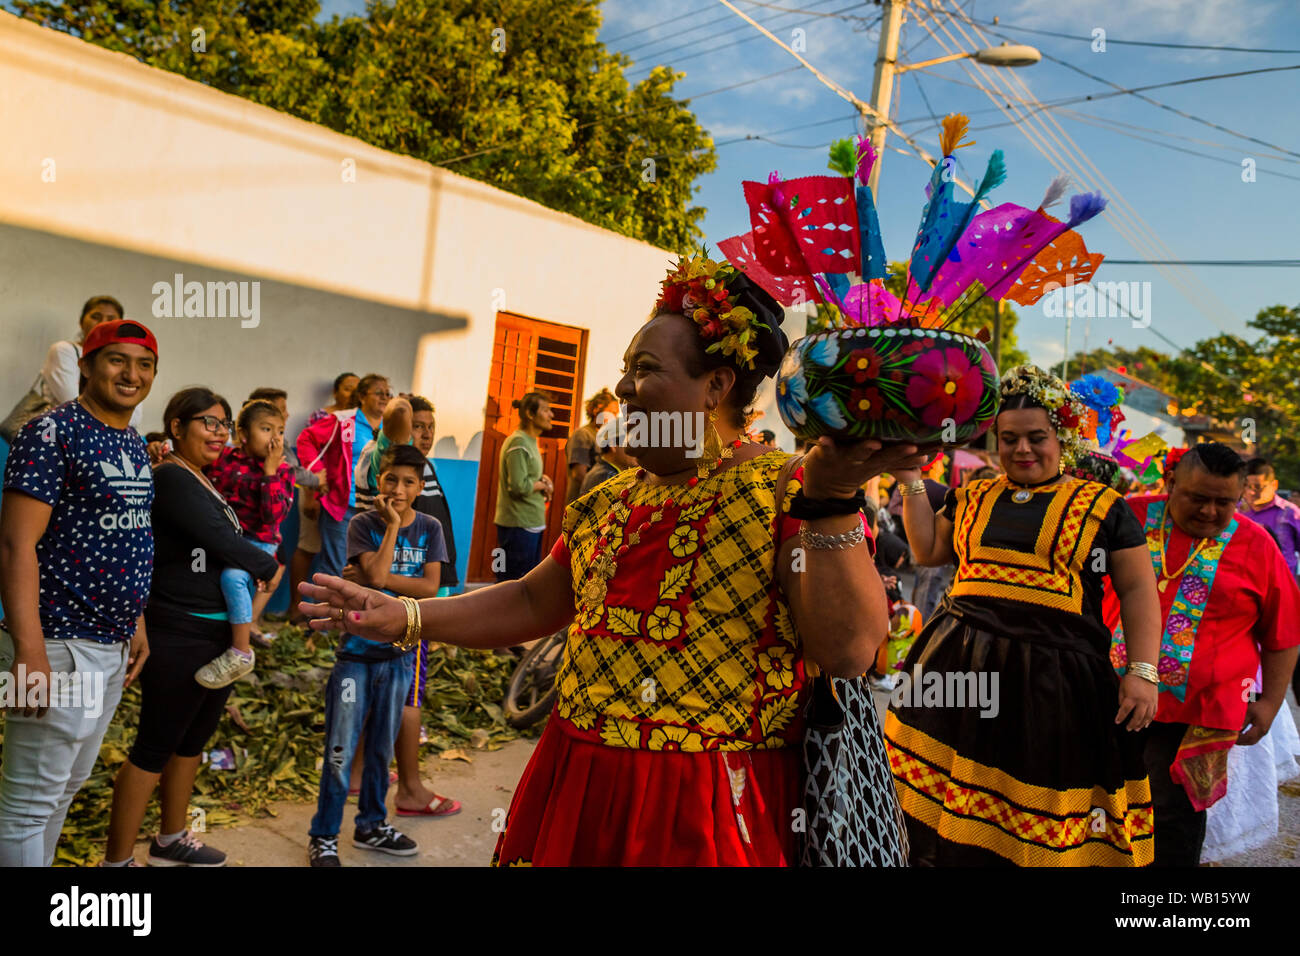 Un Mexicain "muxe" (typiquement, un homosexuel homme portant les vêtements féminins) accueille le public pendant le festival à Juchitán de Zaragoza, Mexique. Banque D'Images